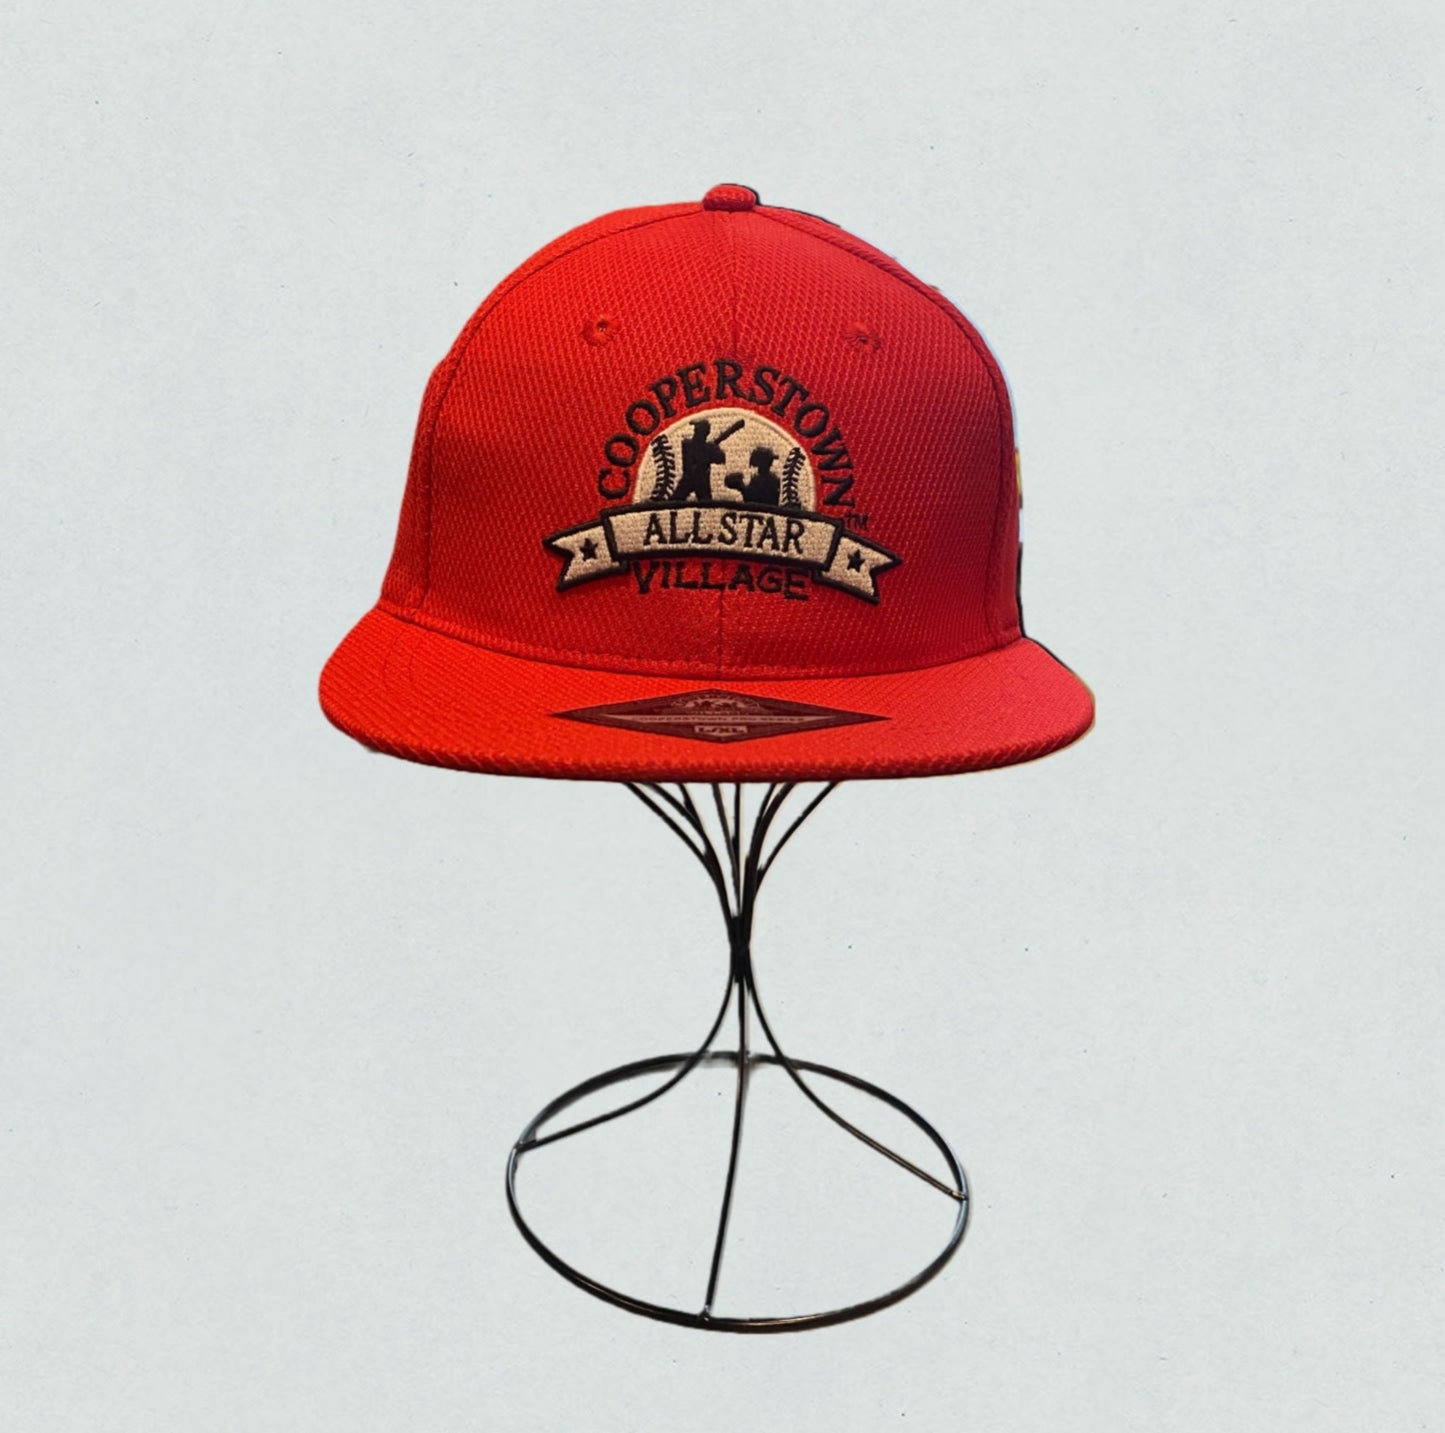 St. Louis Red Custom Fit Baseball Cap